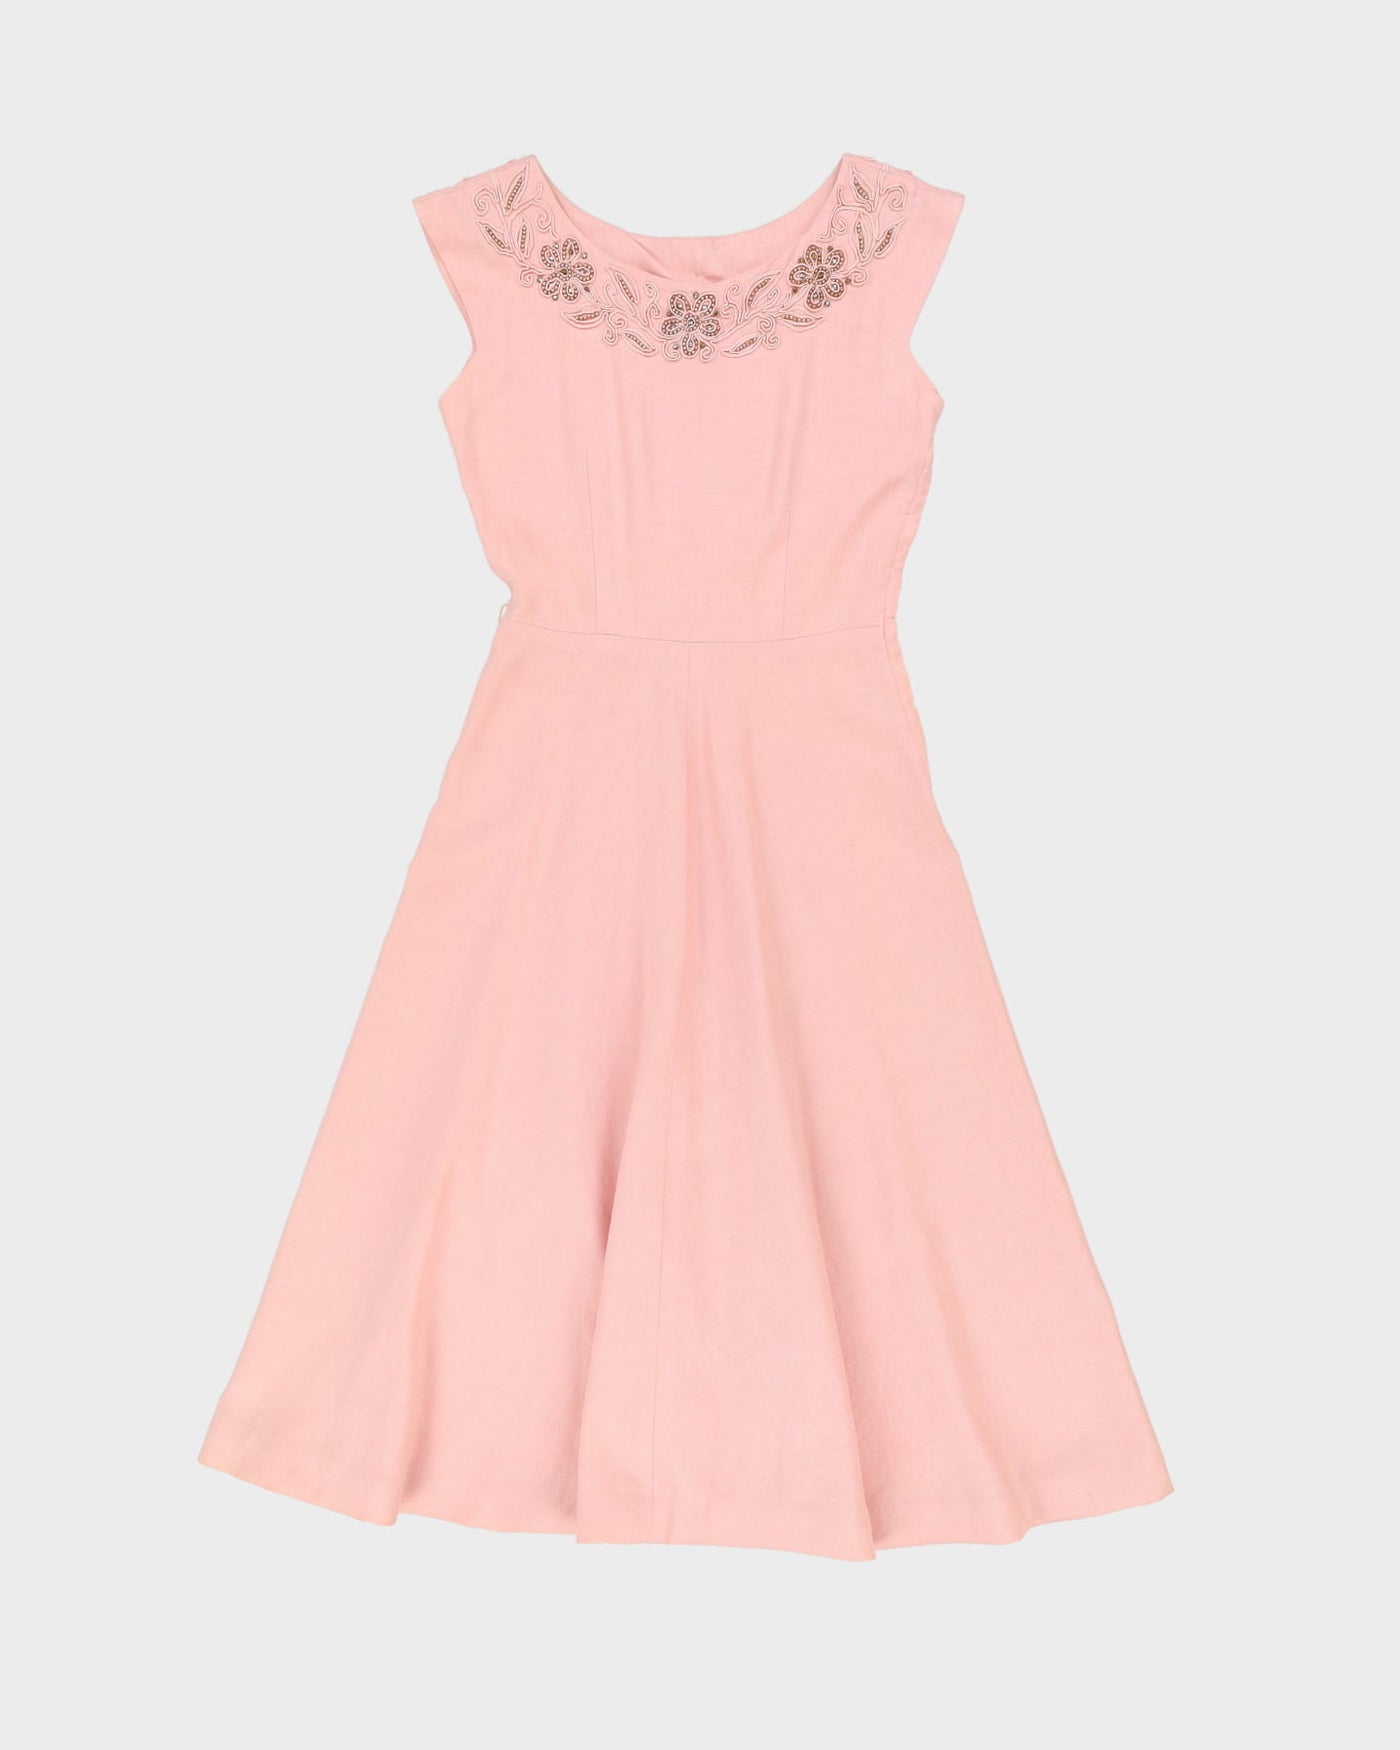 Vintage 1950s Pink Embroidered Linen Tea Dress - S